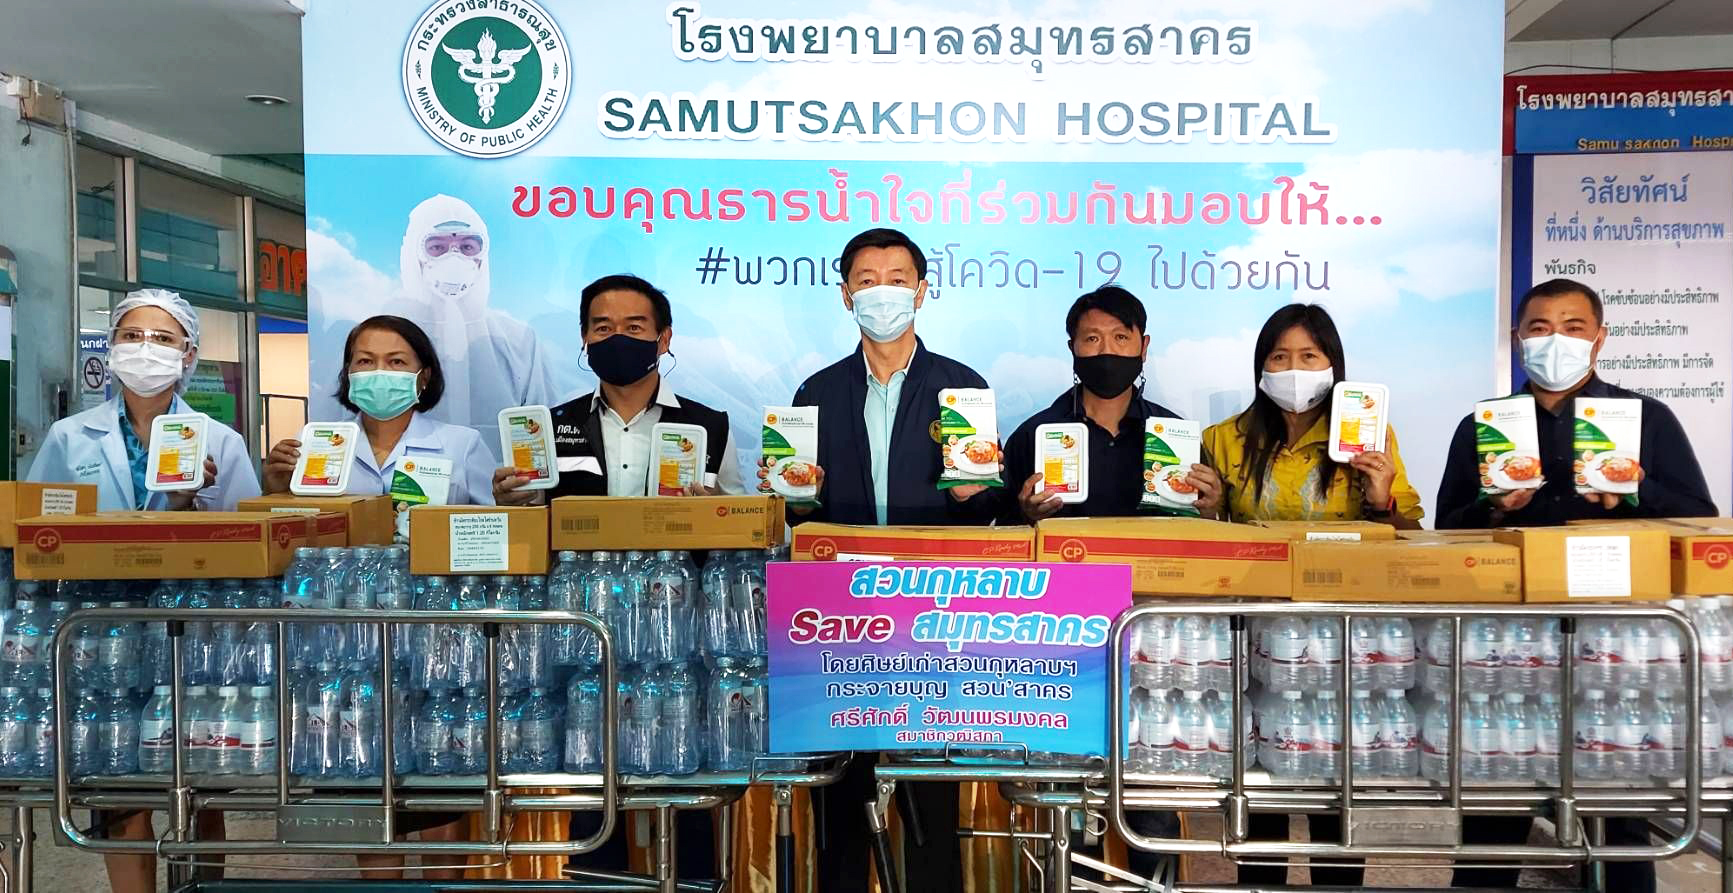 22 January 2021, at Samut Sakhon Hospital, Samut Sakhon Province